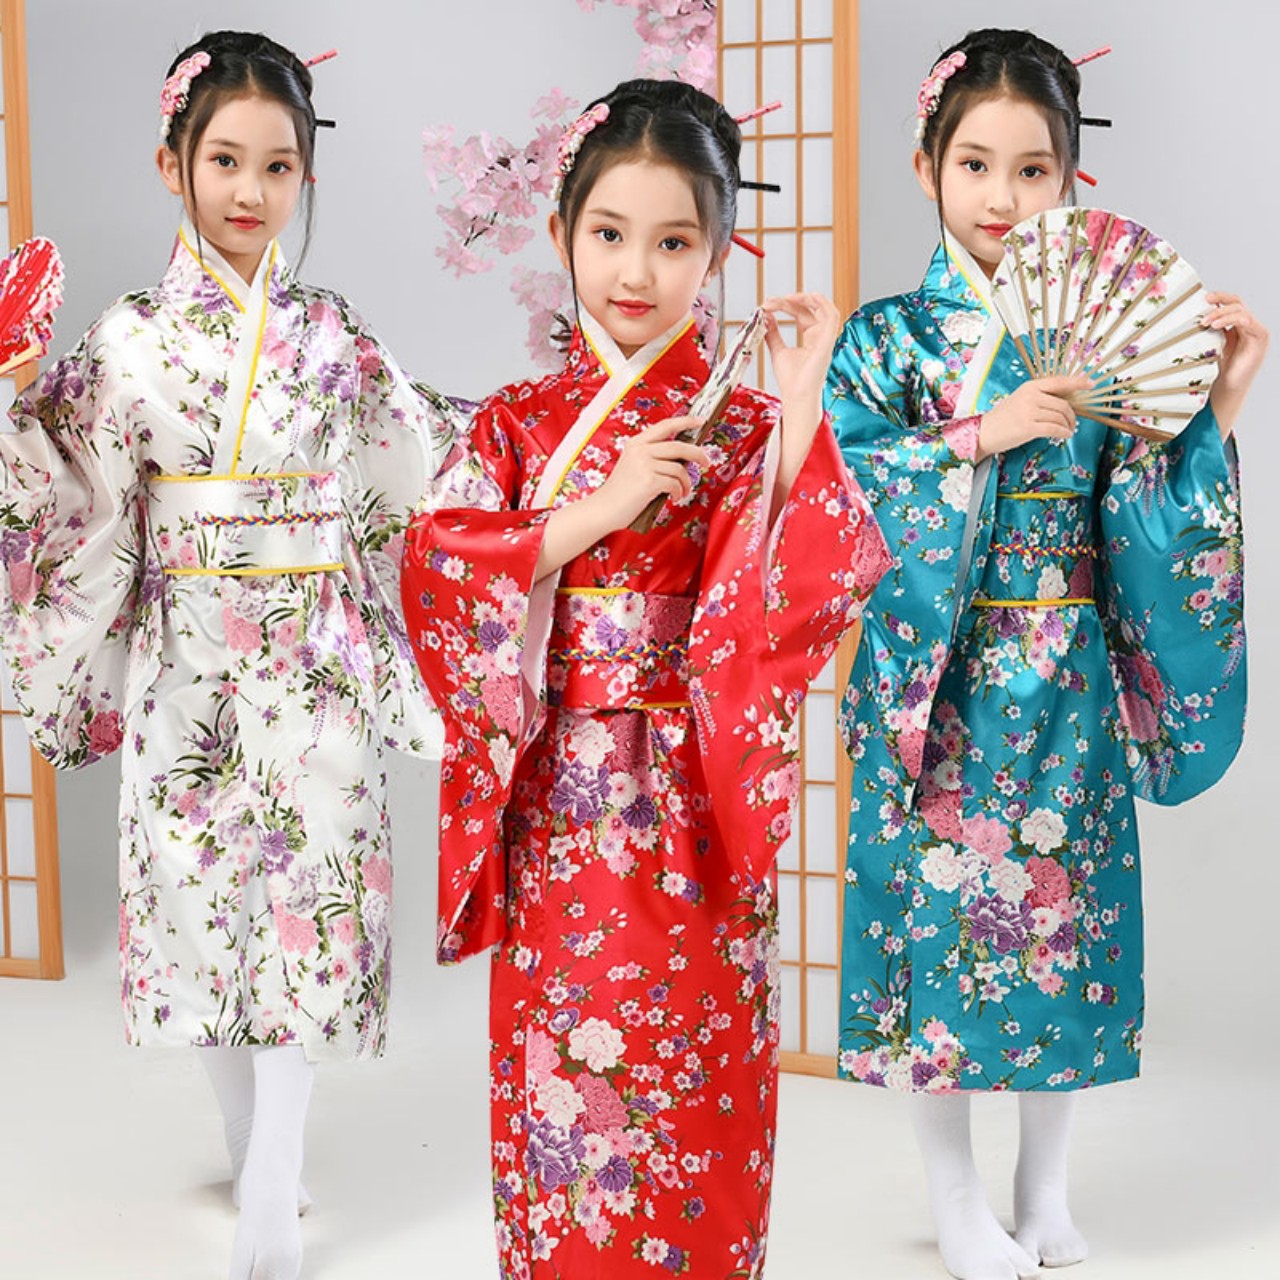 Trái ngược với sự cứng nhắc của samurai, trang phục kimono cho bé gái lại thể hiện nét dịu dàng, thanh nhã và tinh tế. Những chiếc váy kimono mềm mại và đáng yêu sẽ giúp bé gái của bạn thật nổi bật trong bất kỳ sự kiện nào.